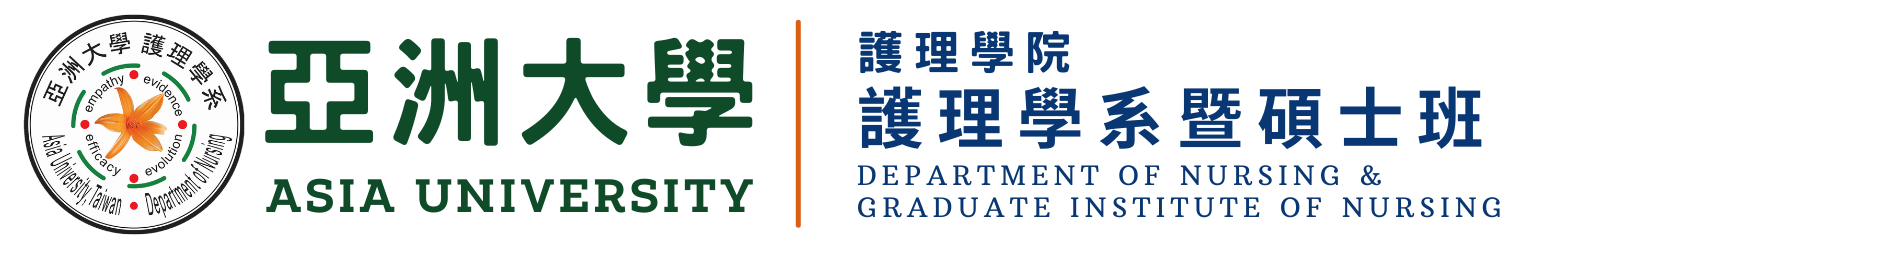 亞洲大學護理學系暨碩士班的Logo